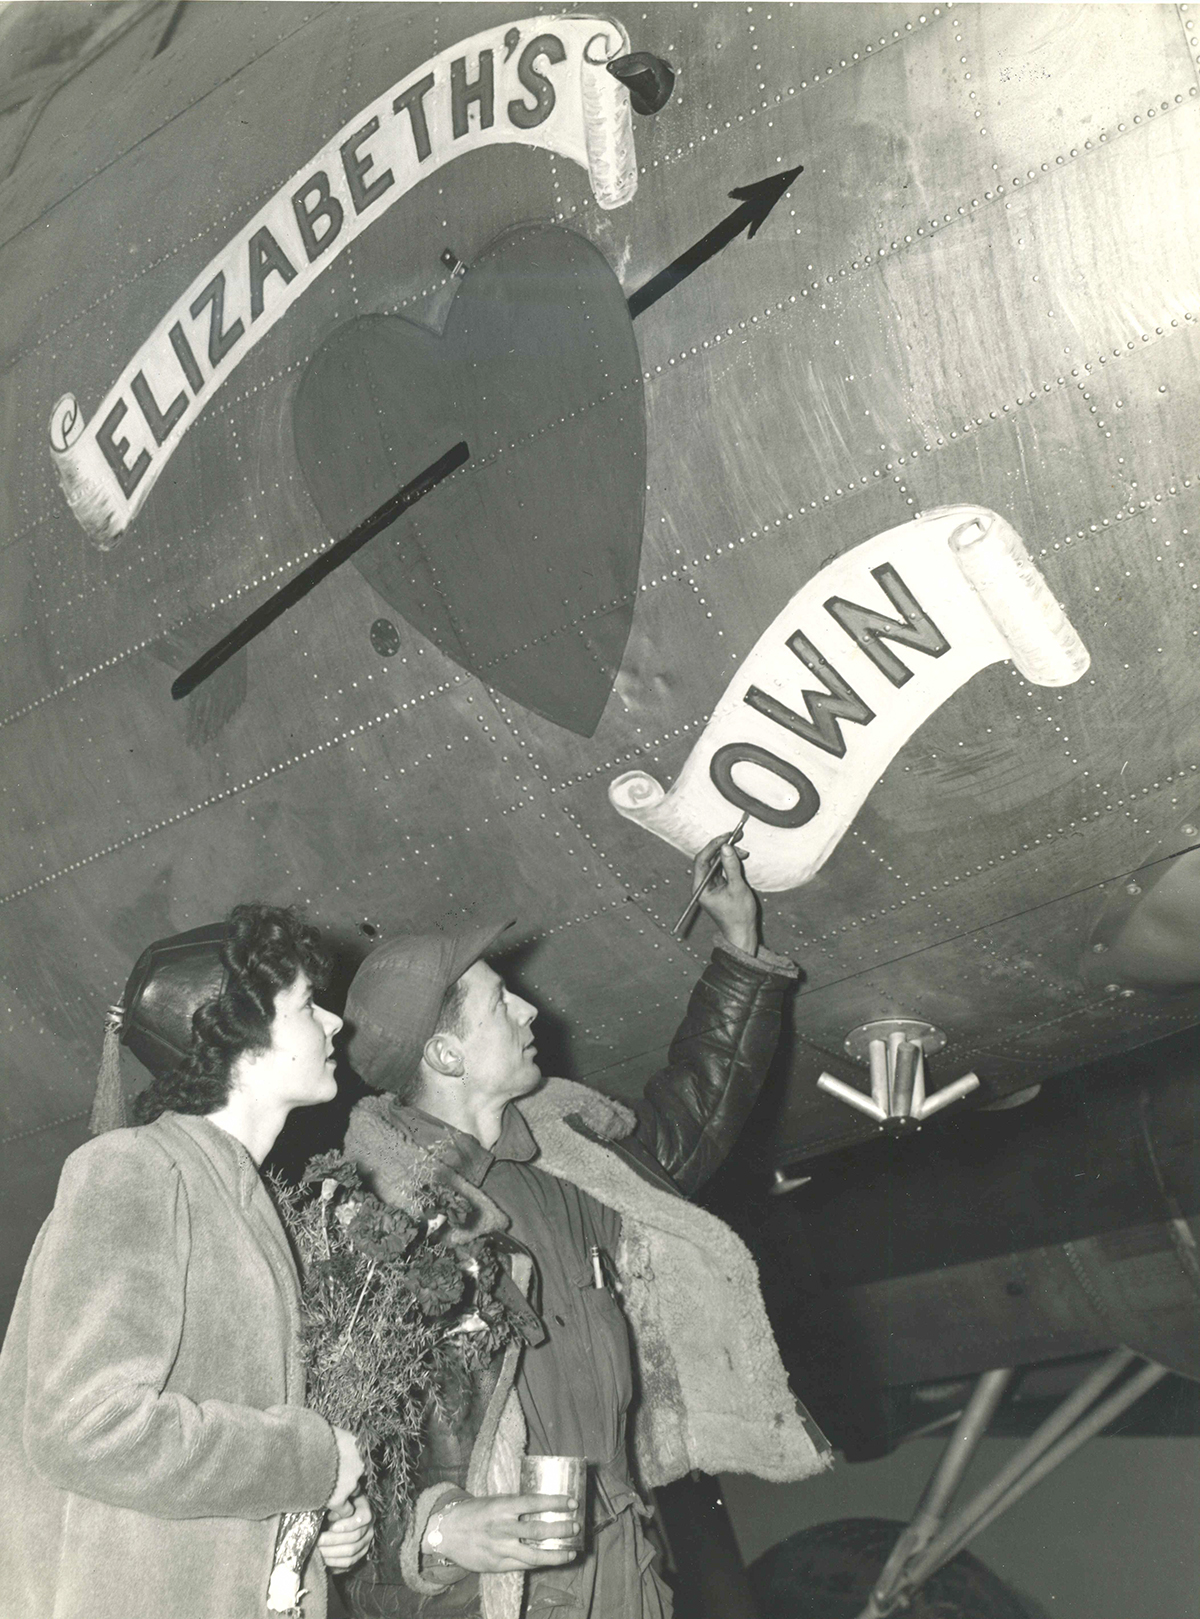 B-17 #44-8516 / Elizabeth’s Own